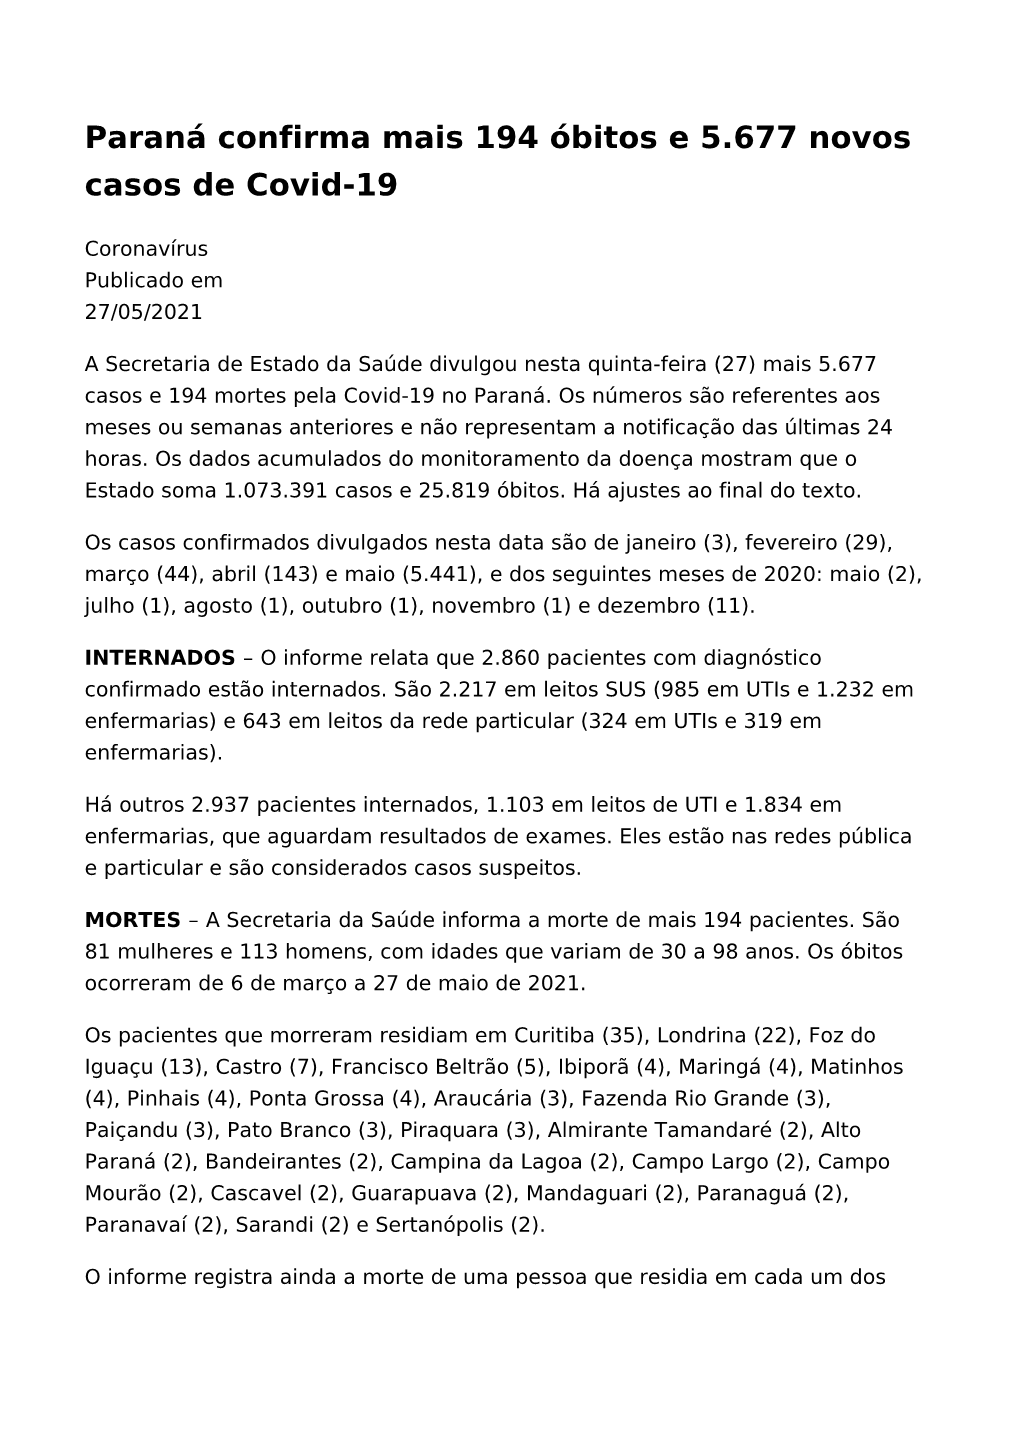 Paraná Confirma Mais 194 Óbitos E 5.677 Novos Casos De Covid-19